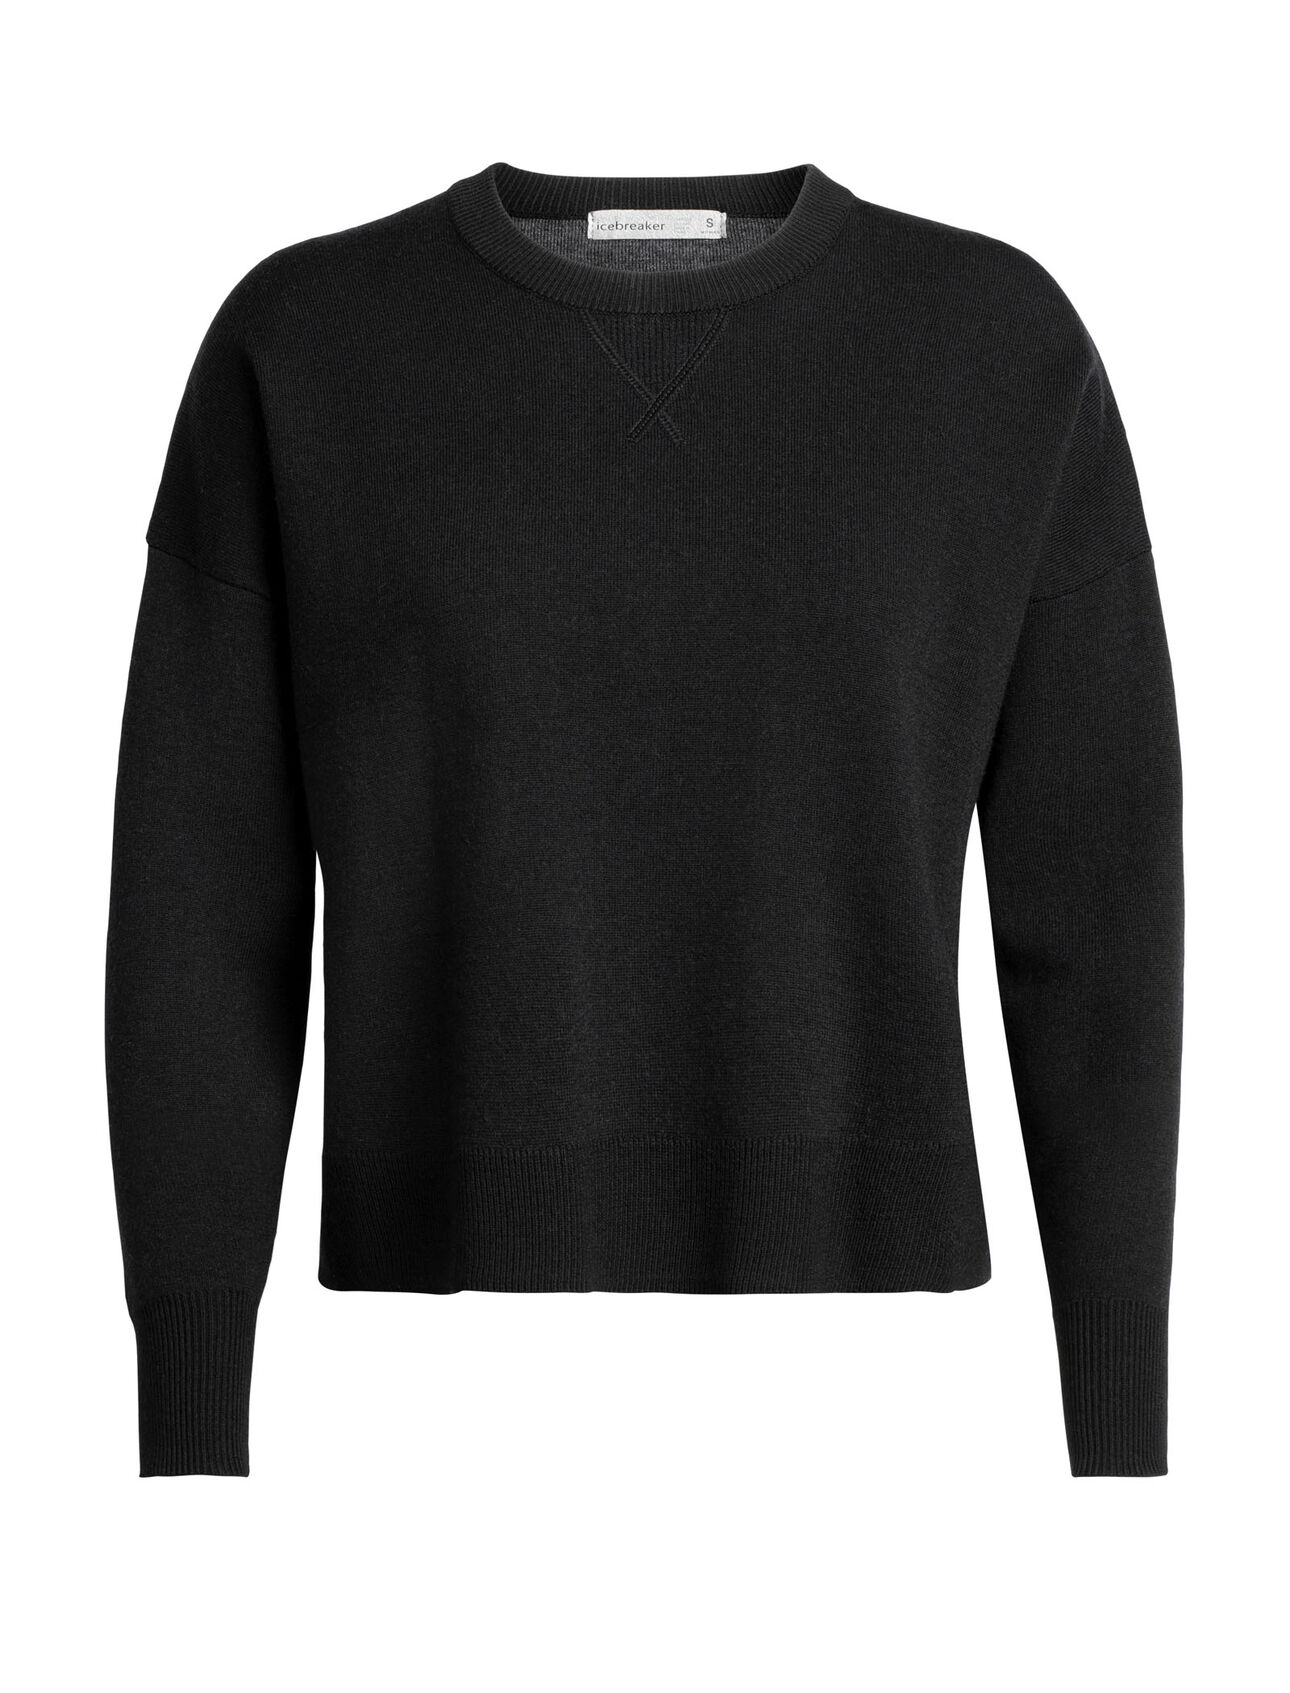 Carrigan Sweater sweatshirt